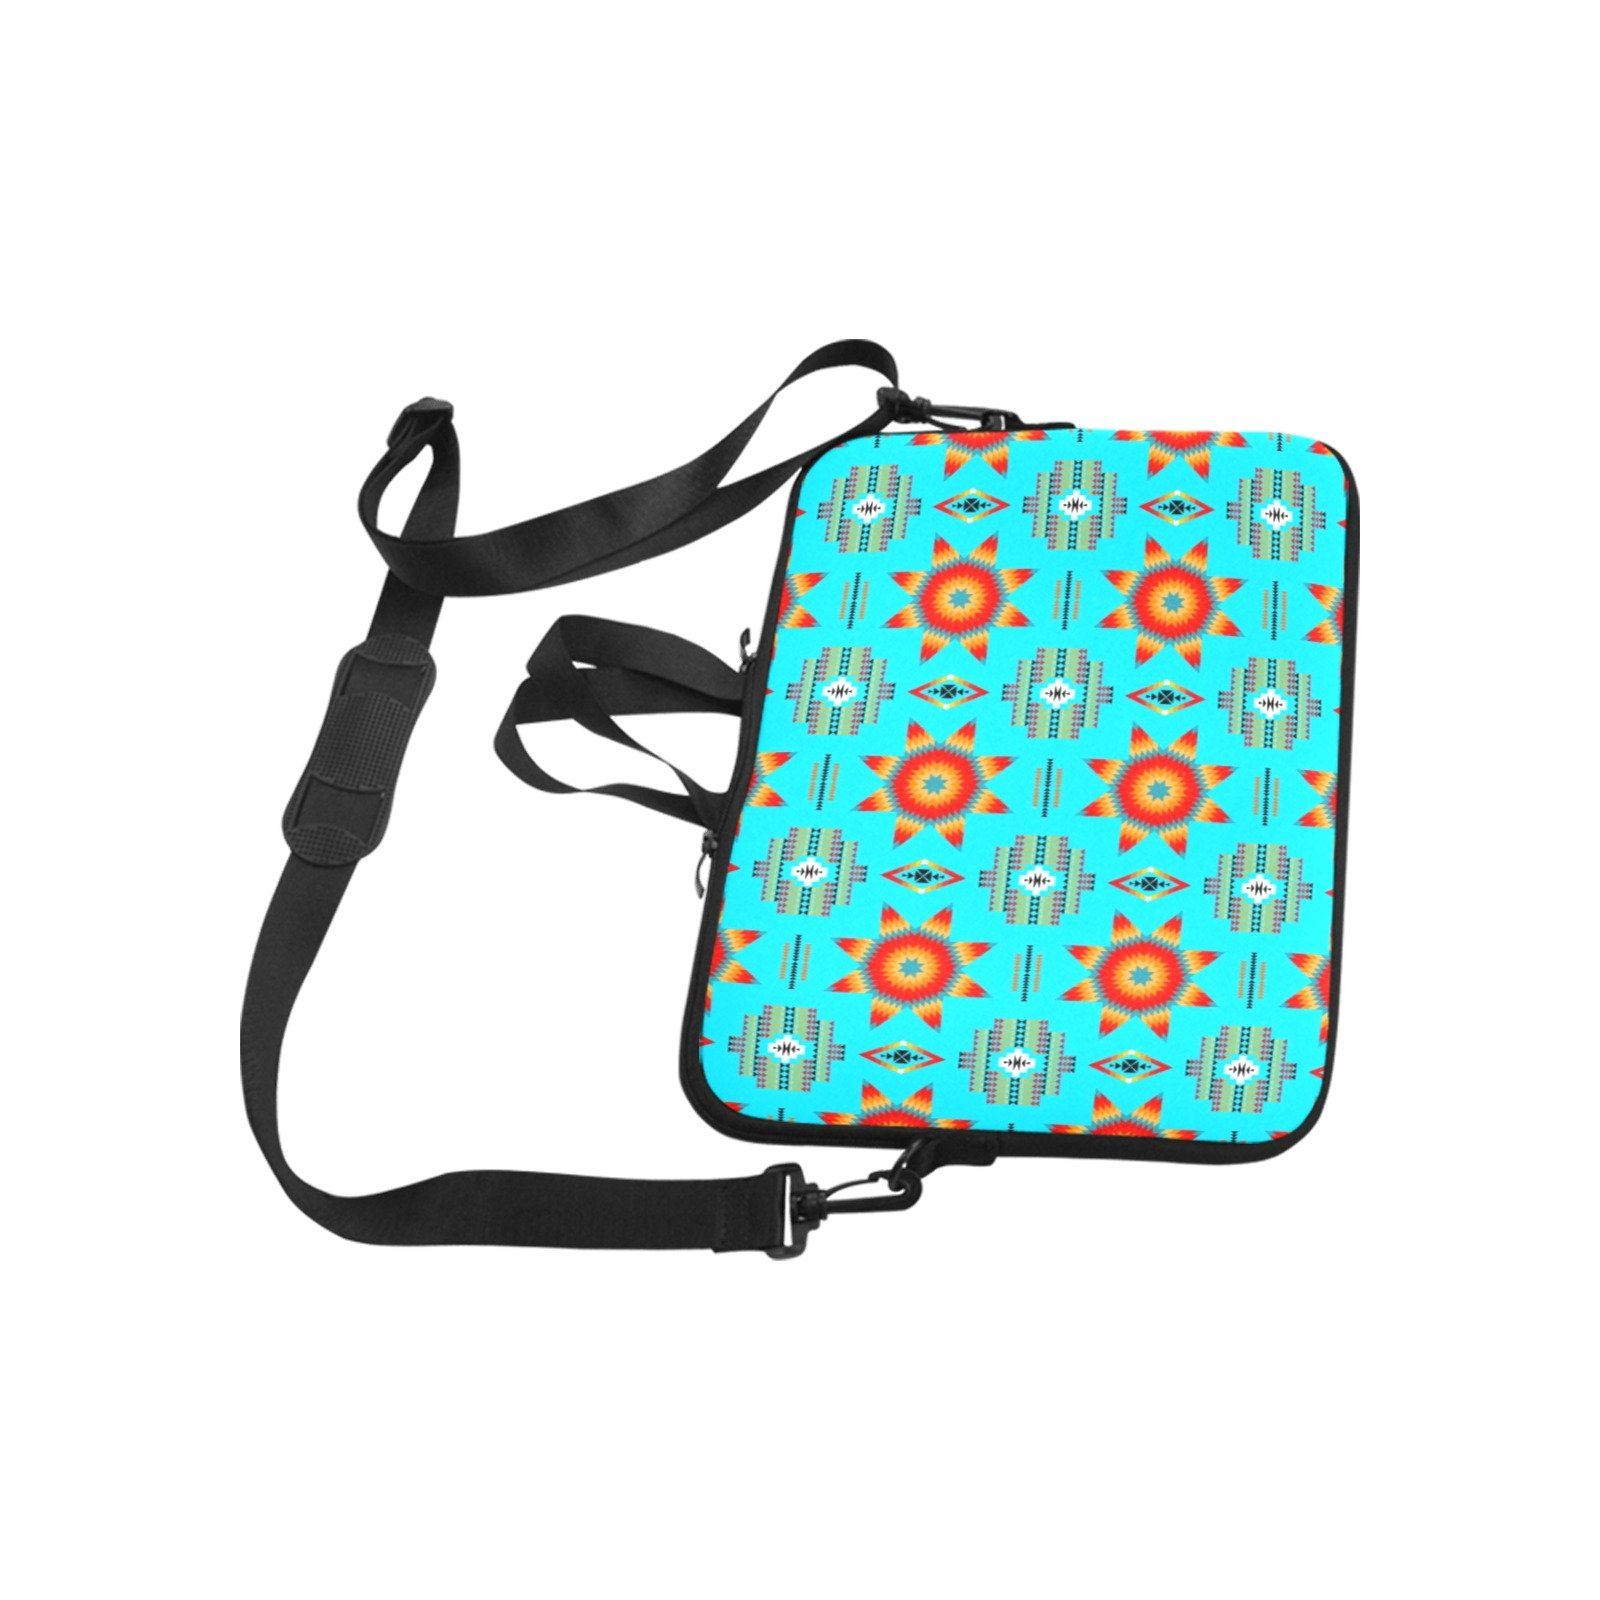 Rising Star Harvest Moon Laptop Handbags 10" bag e-joyer 